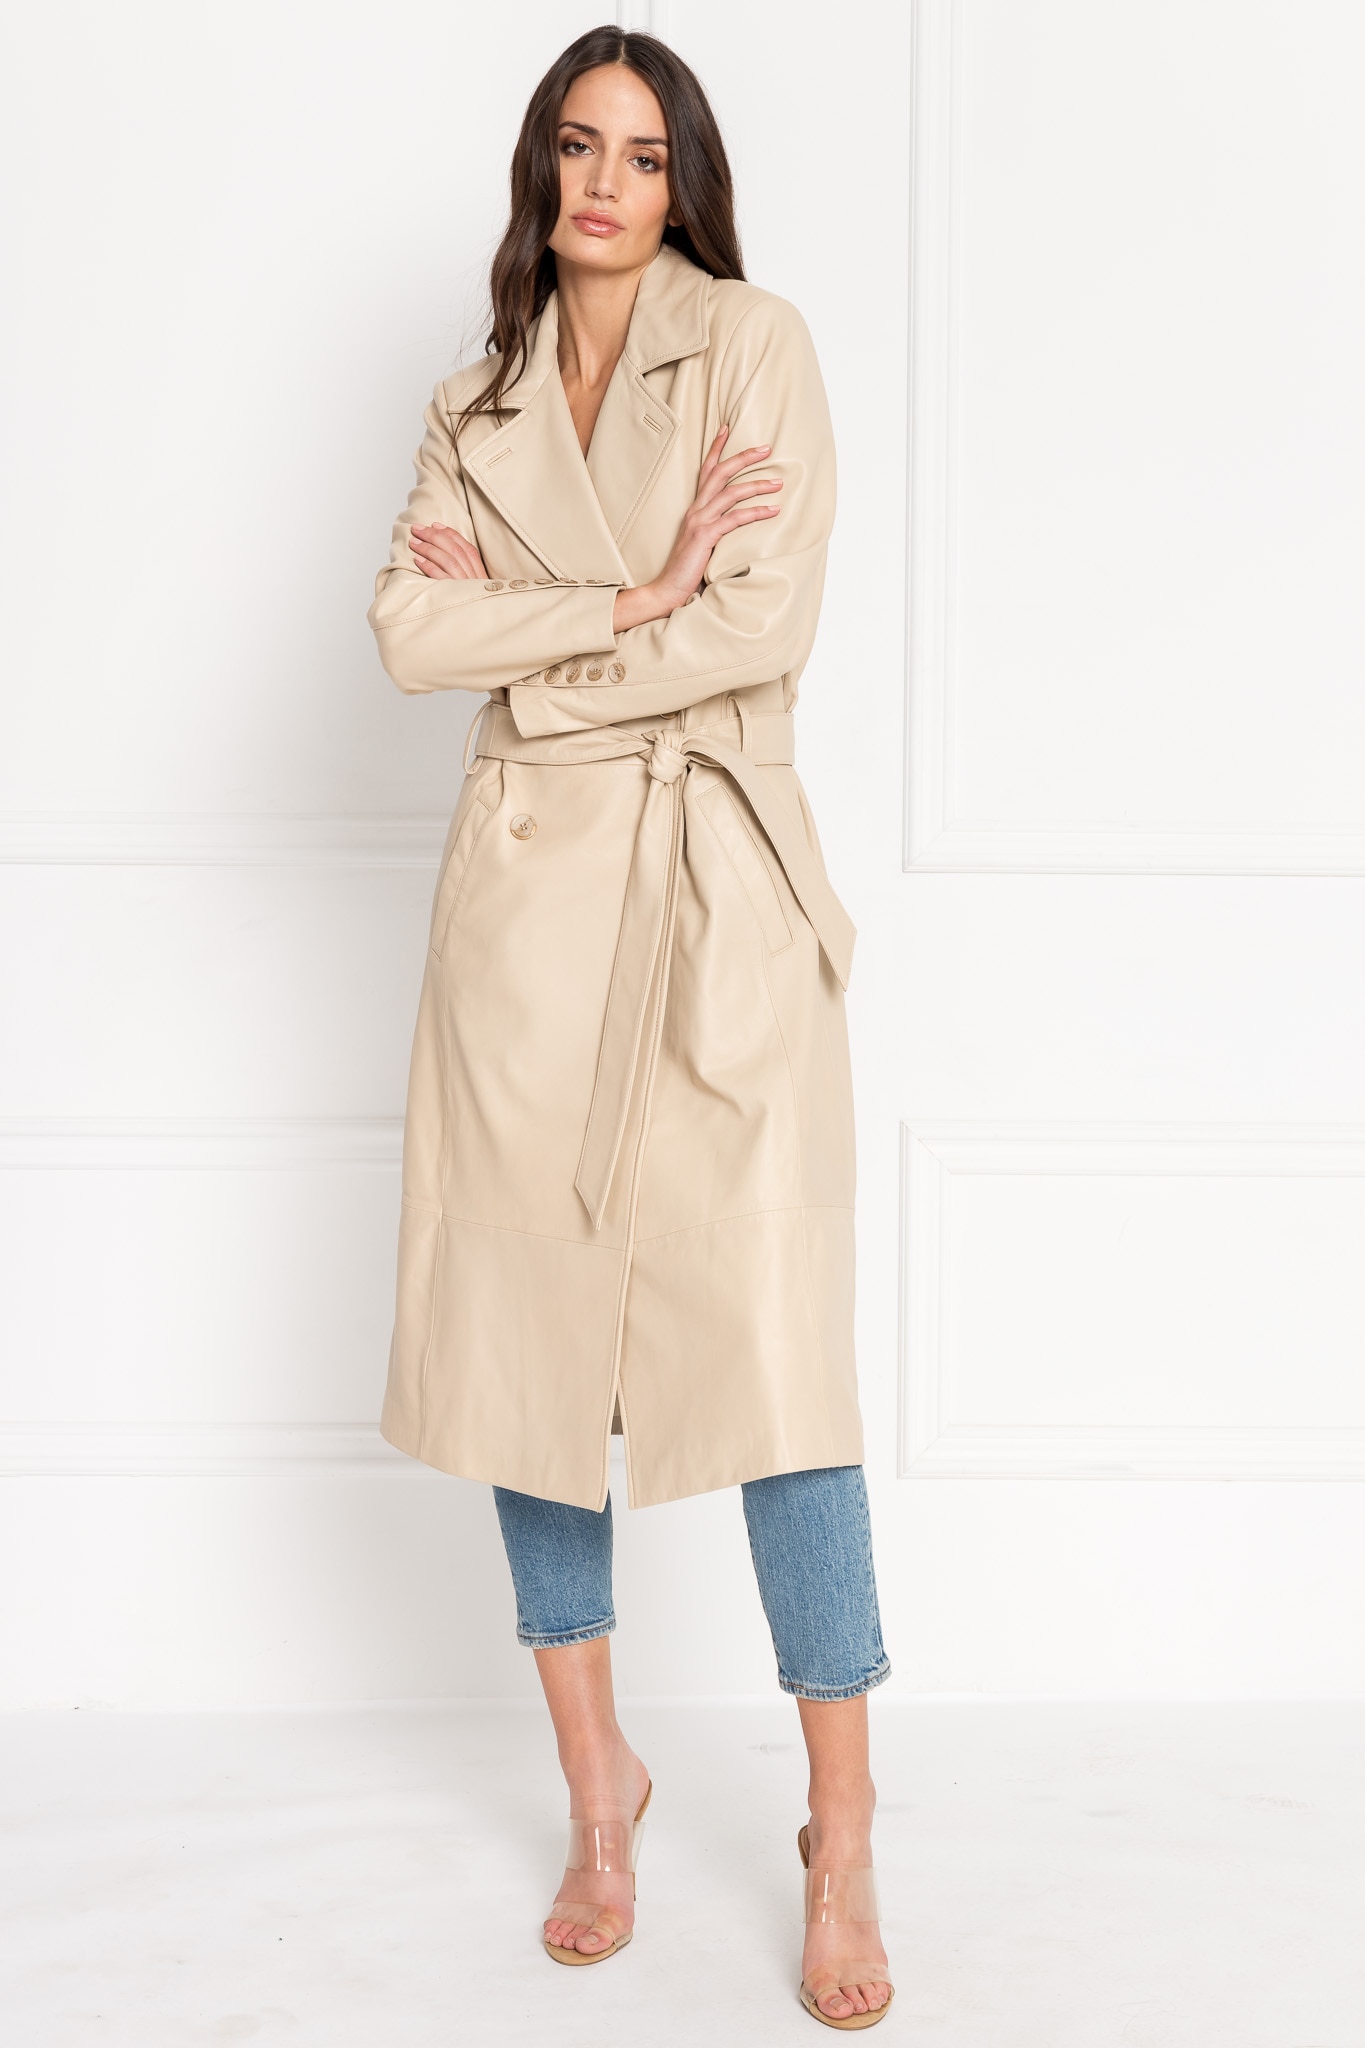 Clothing & Shoes - Jackets & Coats - Rain & Trench Coats